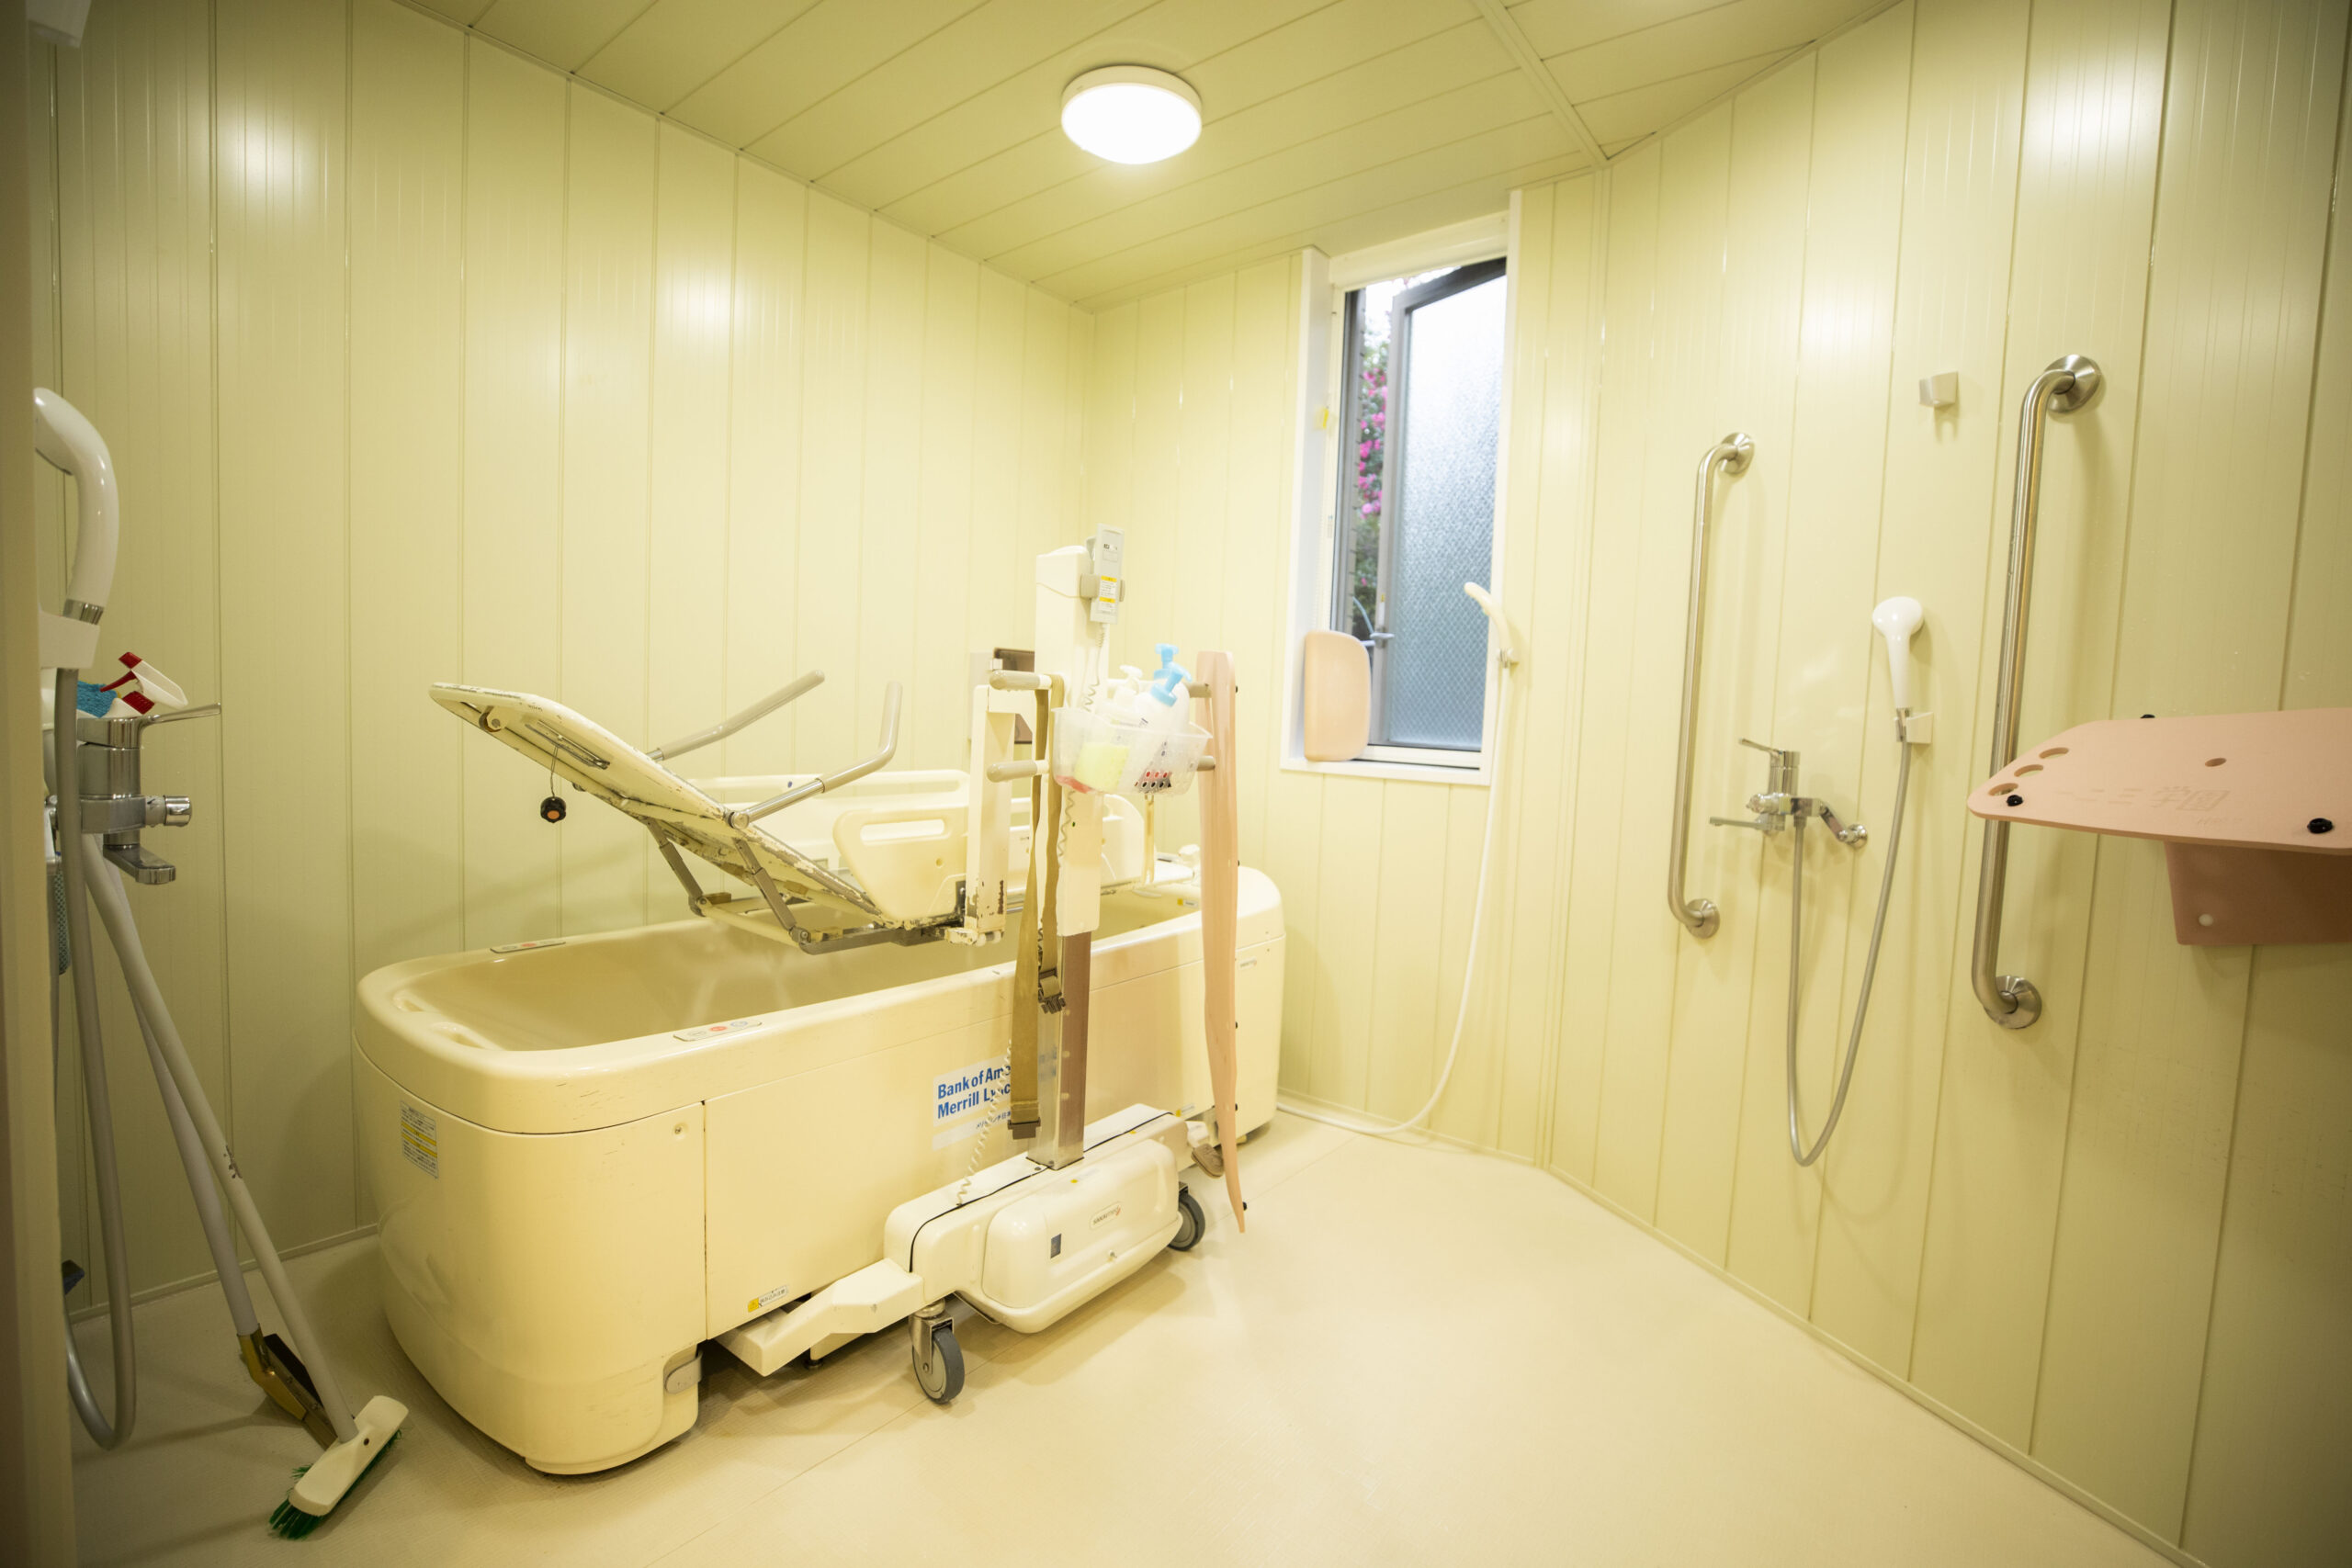 患者さん用のお風呂場です。ここで体をきれいにして、身も心もすっきりすることができます